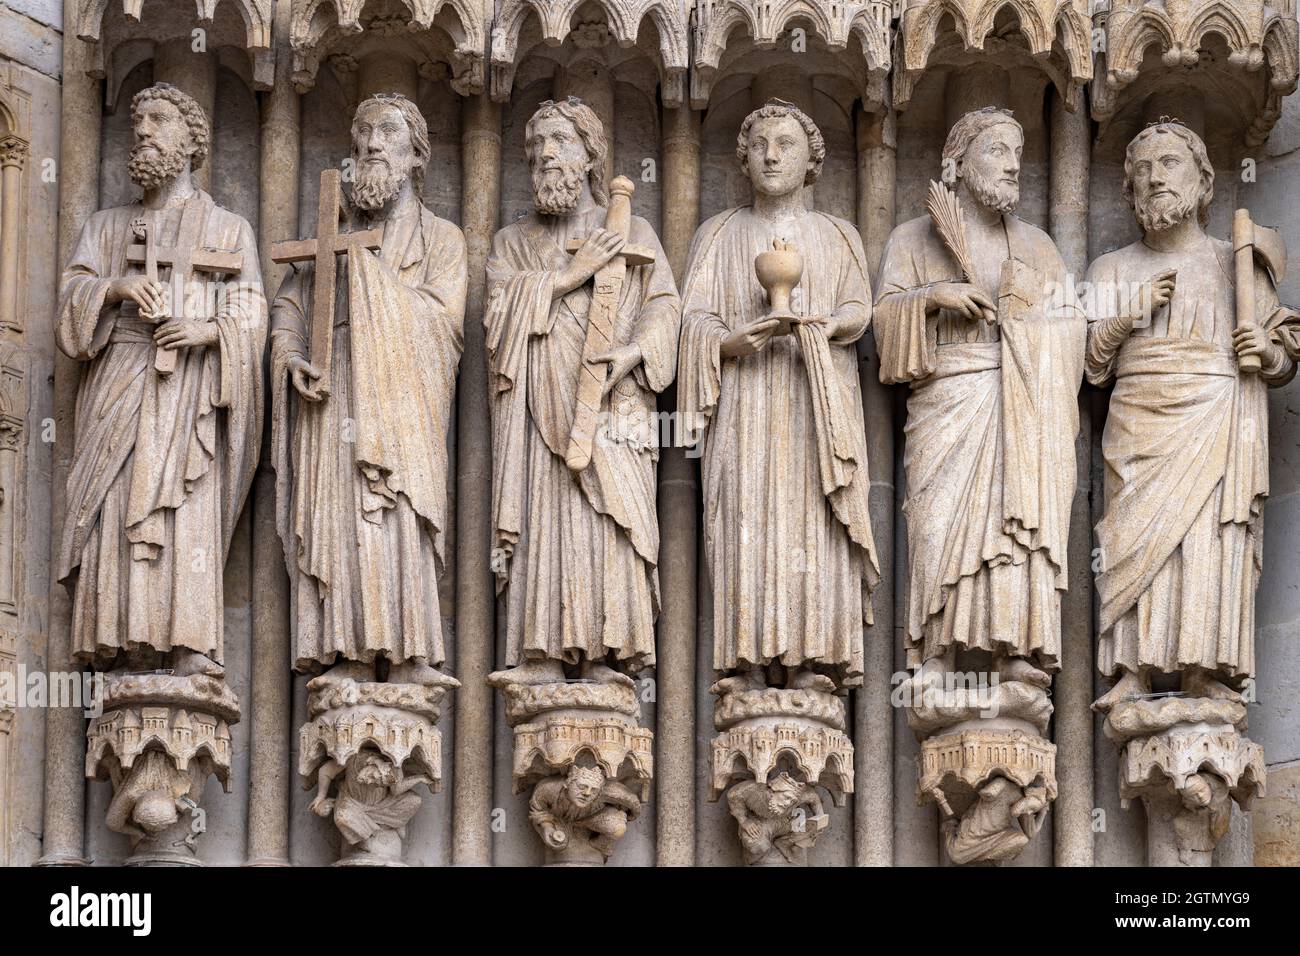 Statuen der Apostel an der Westfassade der Kathedrale Notre Dame d’Amiens, Amiens, Frankreich | statue Apostel sulla facciata ovest della Cattedrale Foto Stock